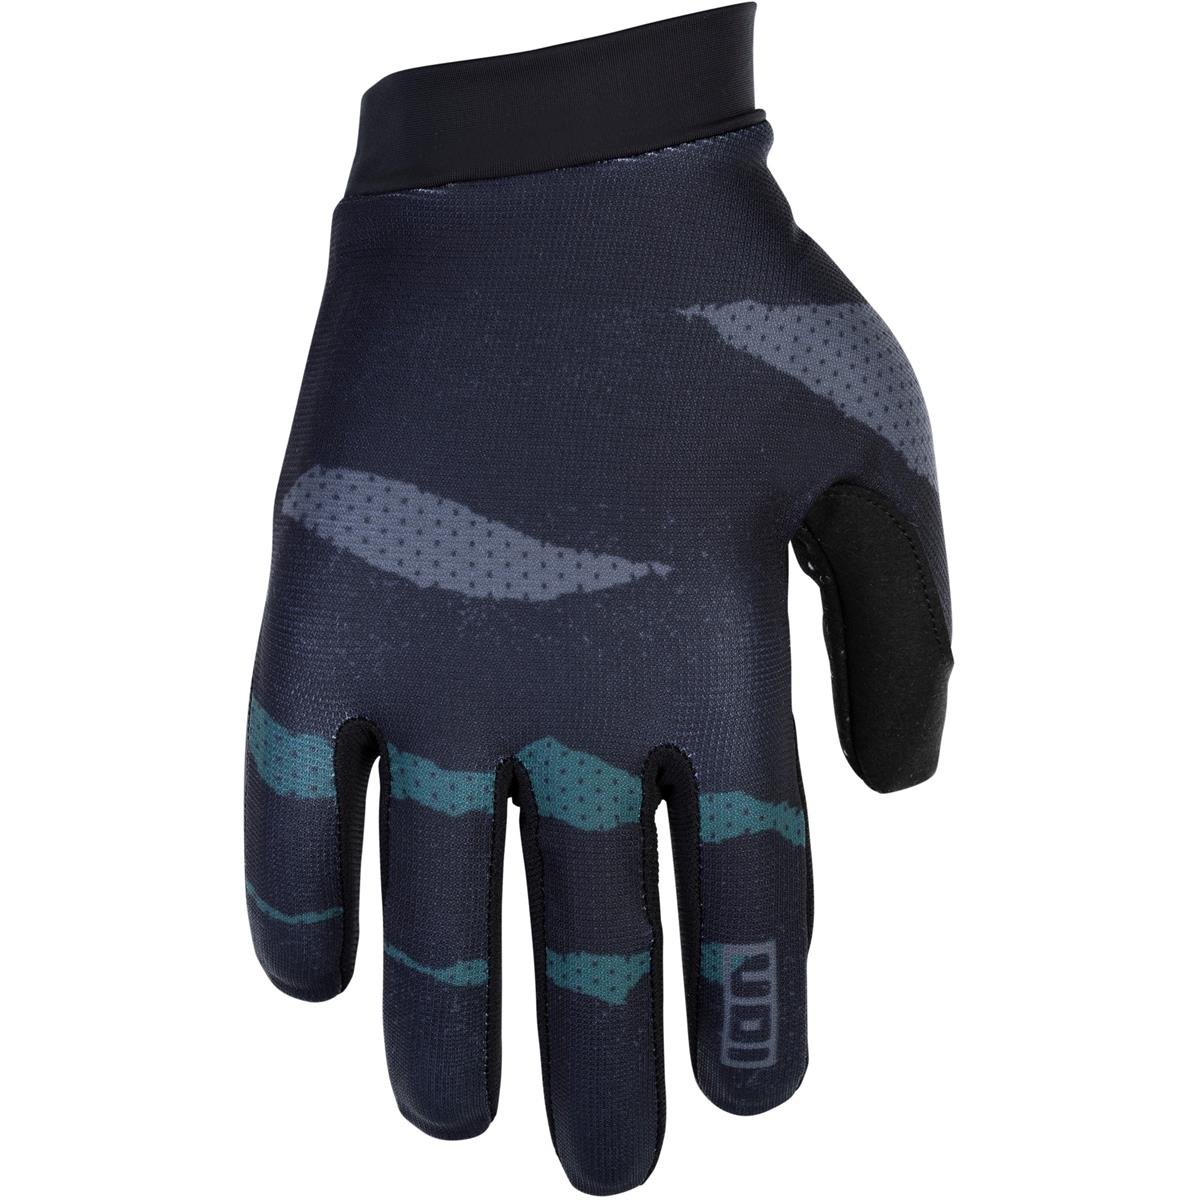 ION MTB Gloves Scrub Black